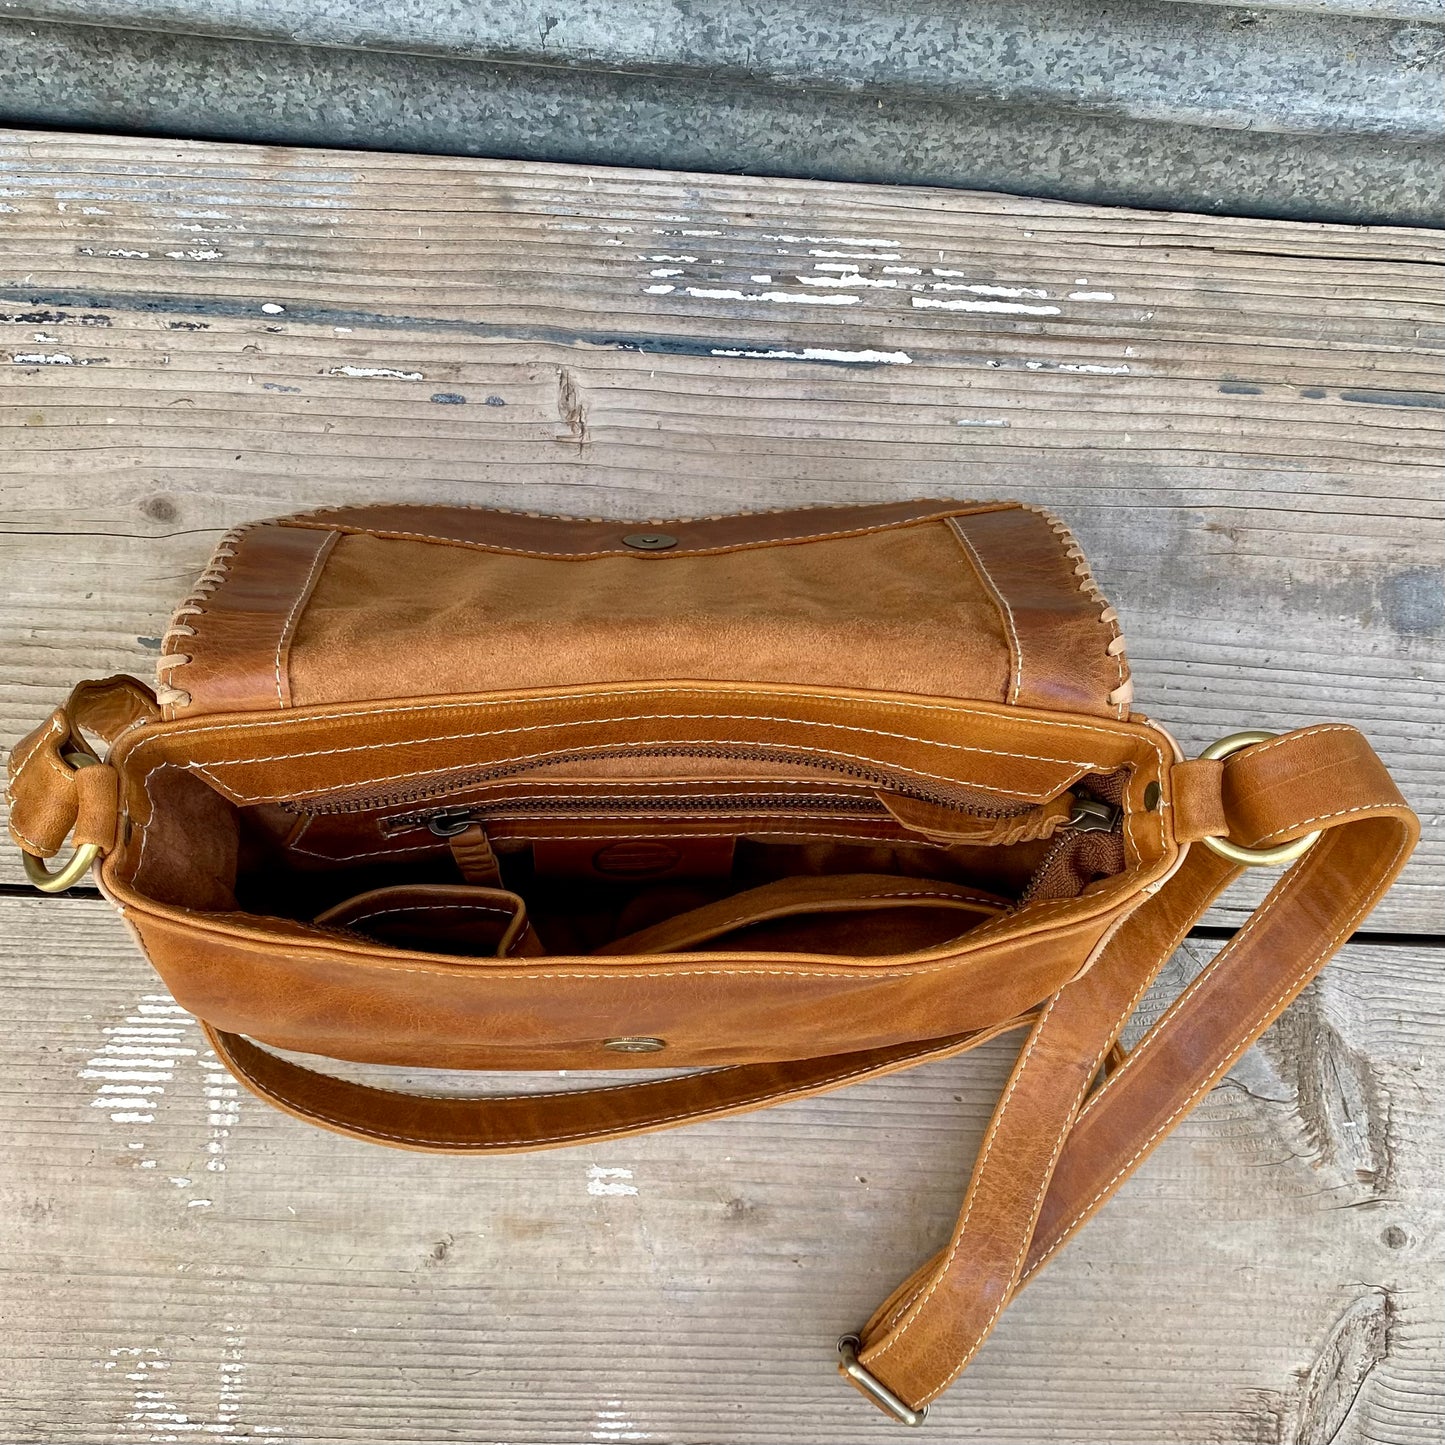 Carved Leather Handbag